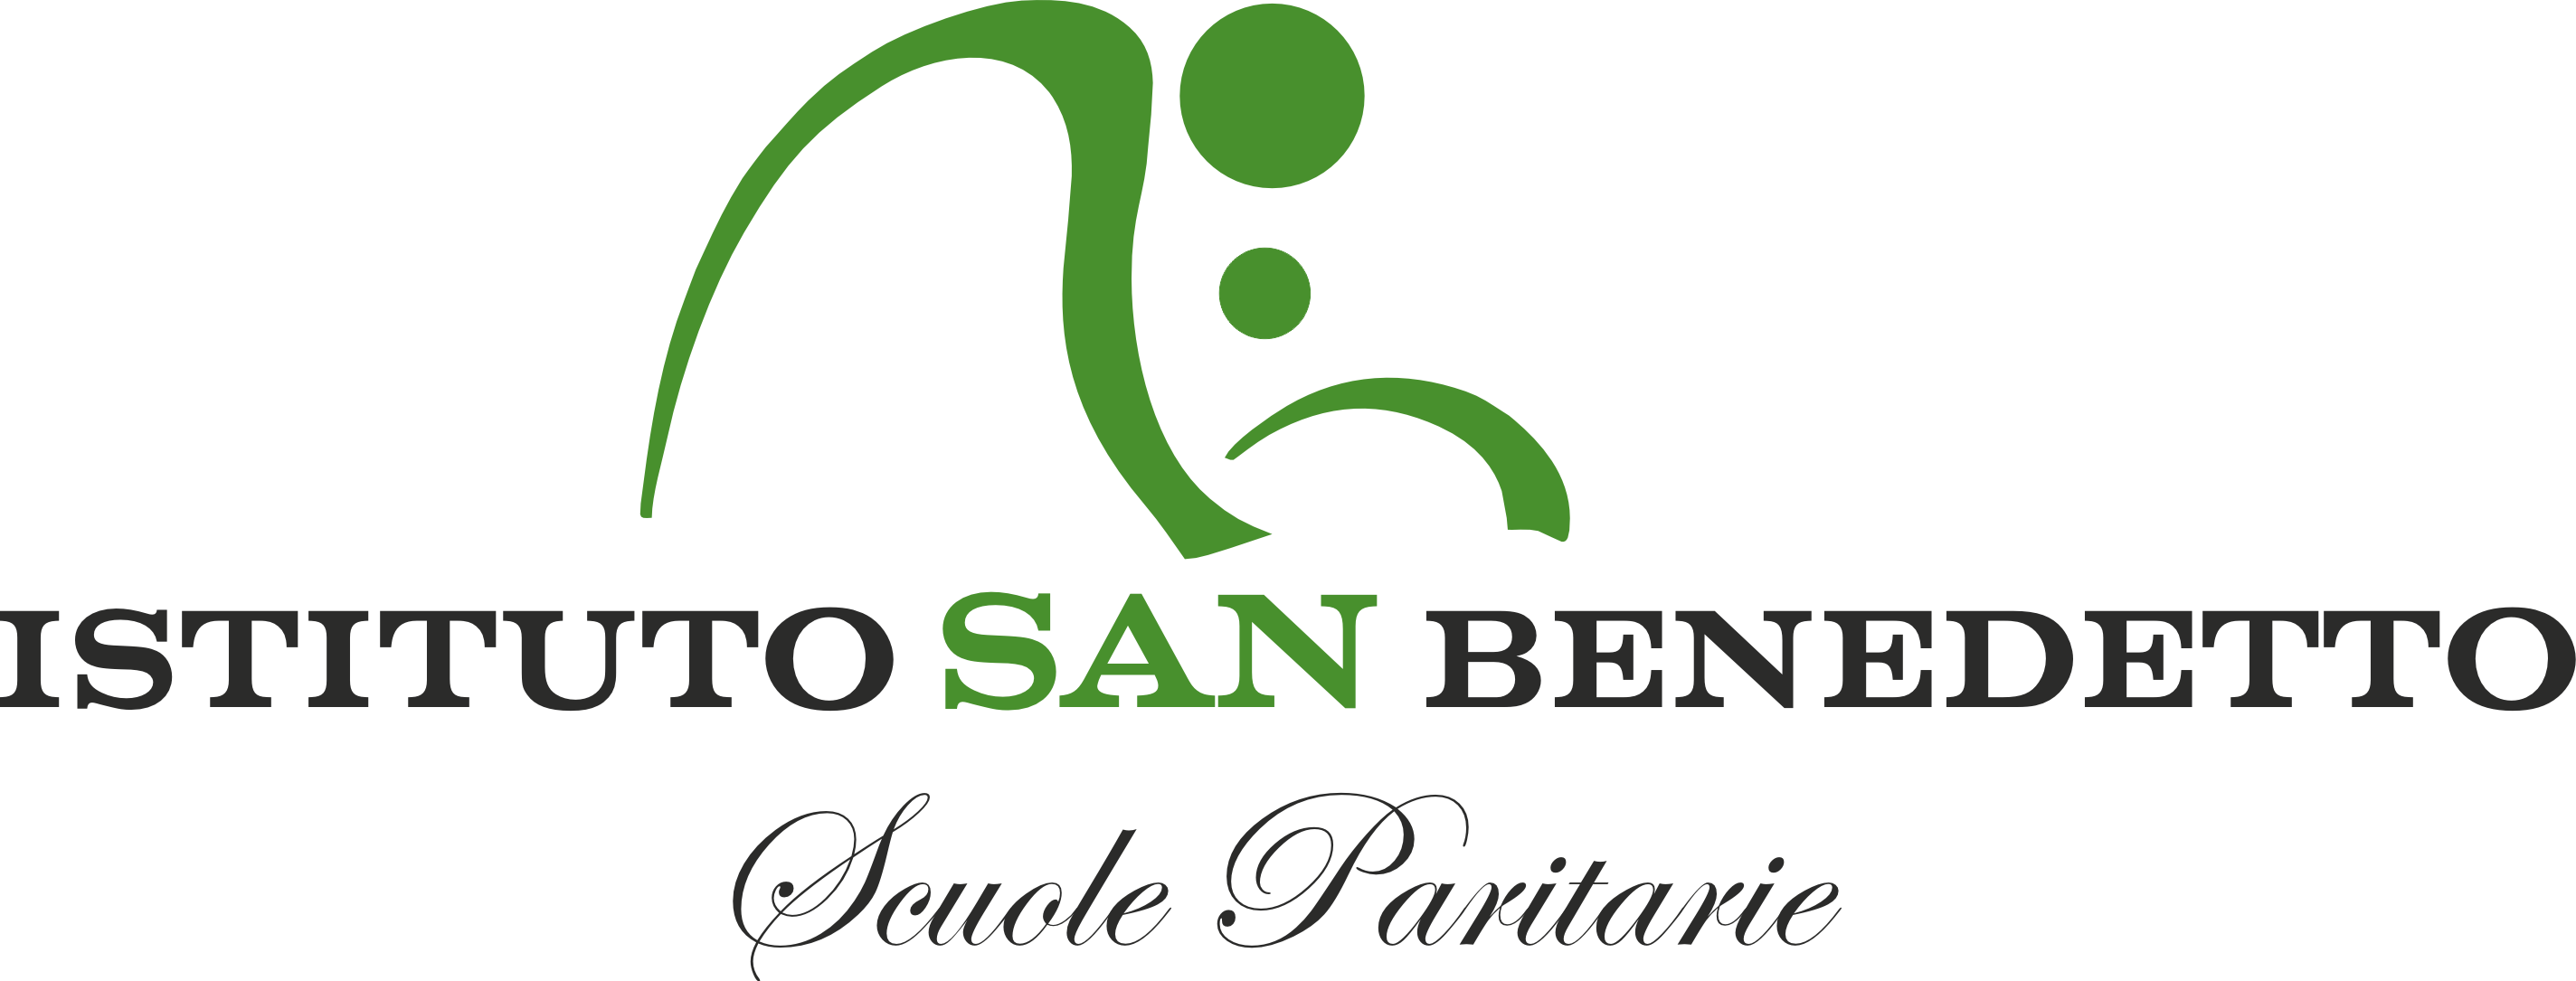 Istituto San Benedetto